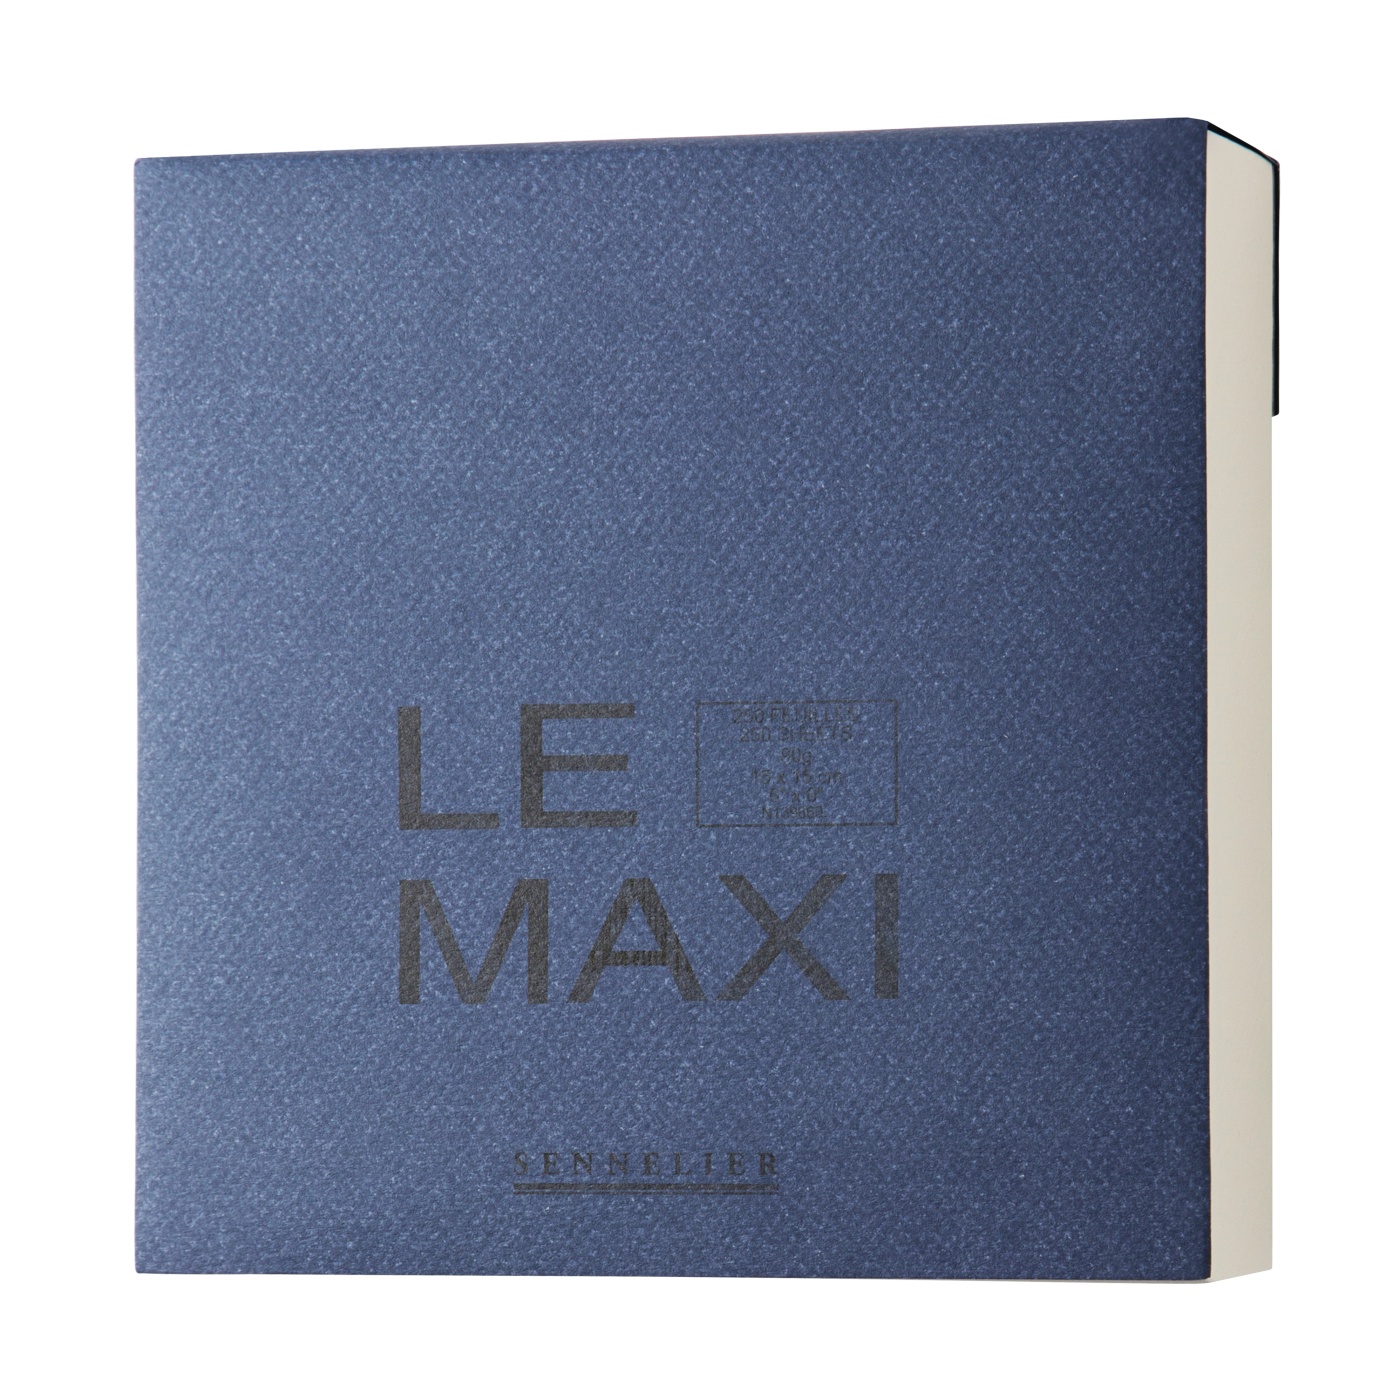 Le Maxi Skissblock 15x15 cm i gruppen Papper & Block / Konstnärsblock / Rit- och skissblock hos Pen Store (106229)